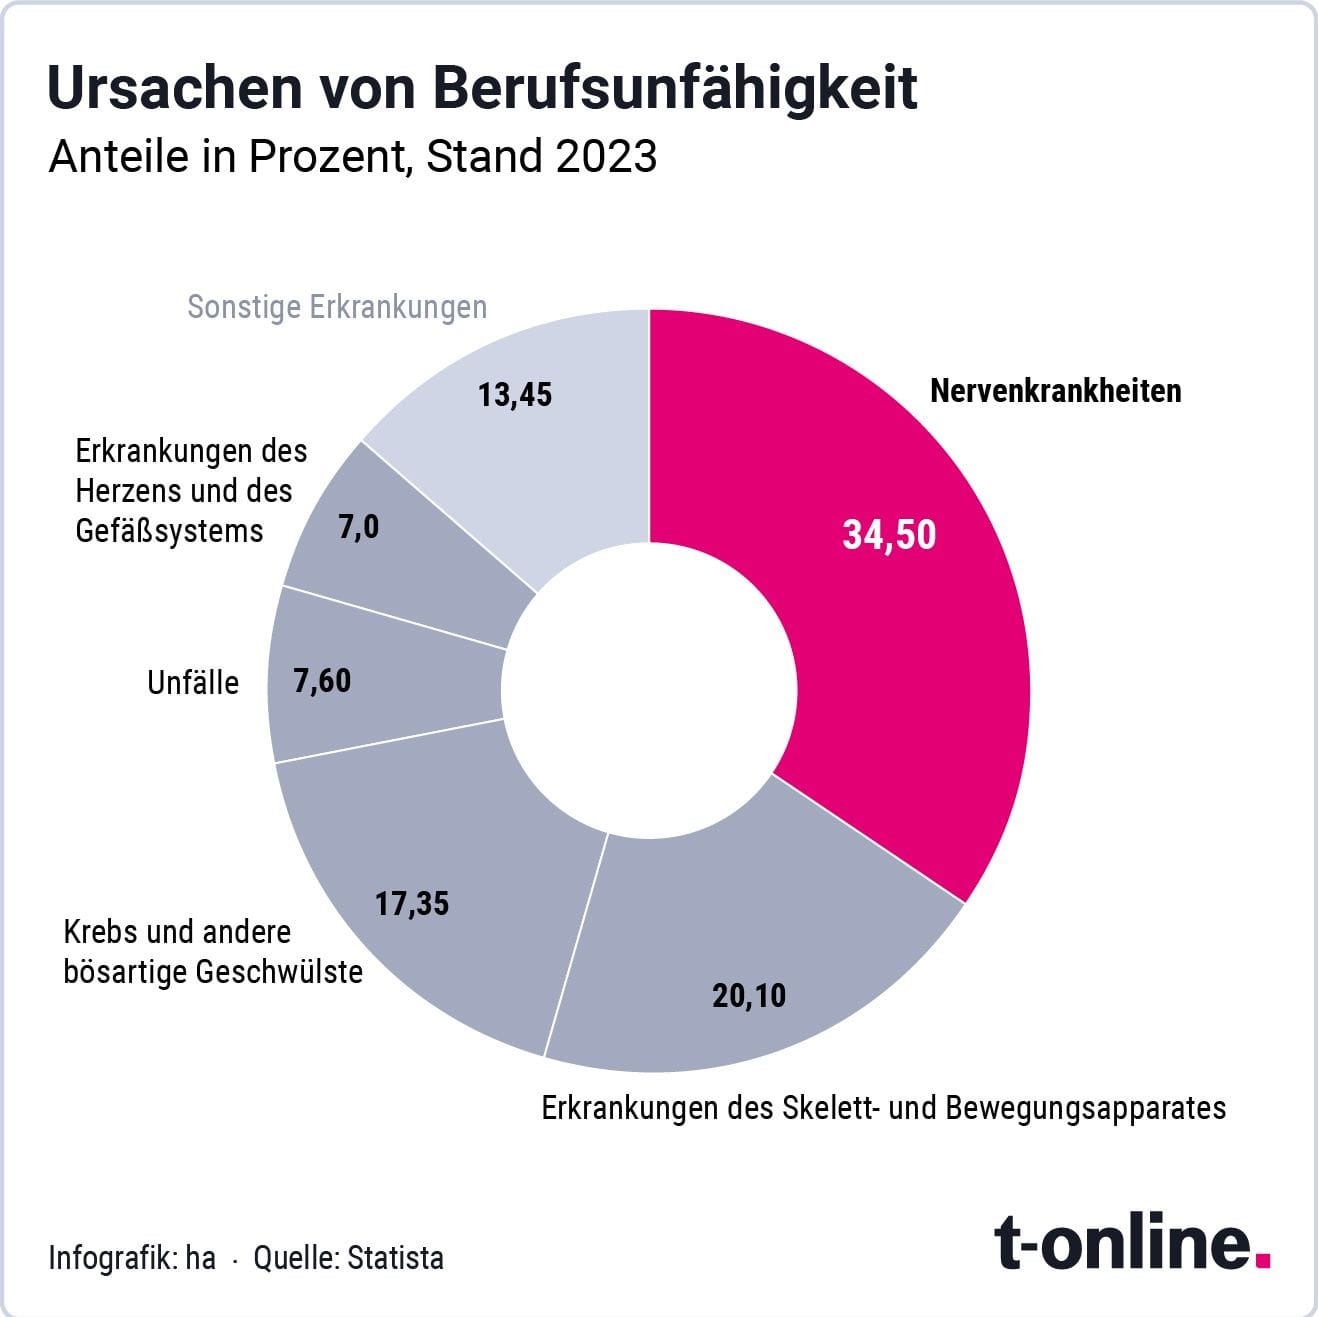 Verteilung der Ursachen von Berufsunfähigkeit in Deutschland im Jahr 2023